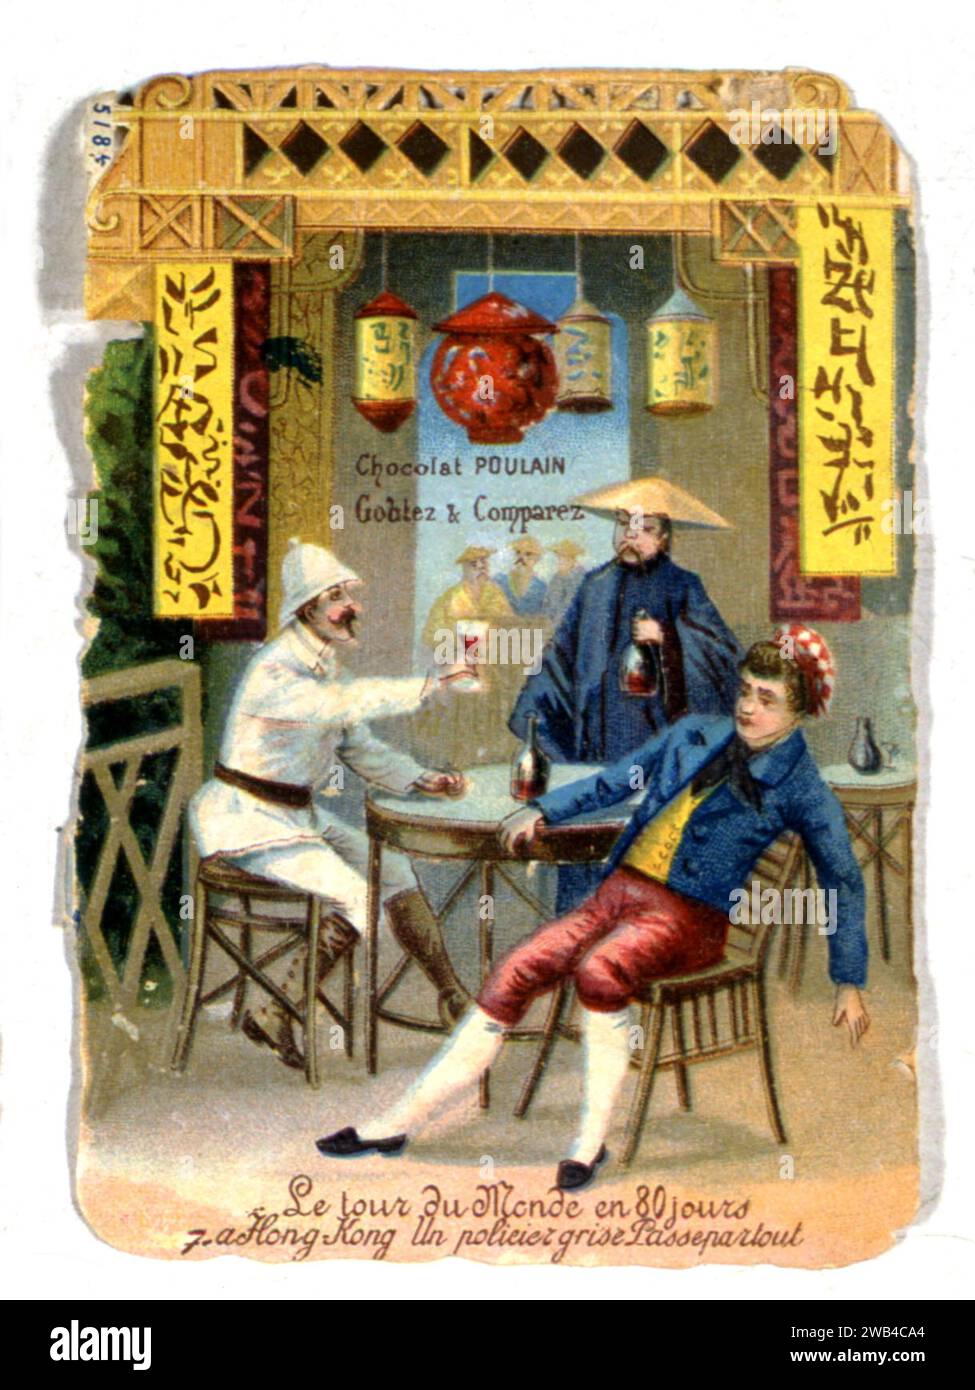 Jules Verne "Around the World in 80 Days" (francese: "Le tour du monde en 80 jours") Chromolitografia pubblicitaria Poulain Chocolate 19th Century Nantes, Jules Verne Museum Foto Stock